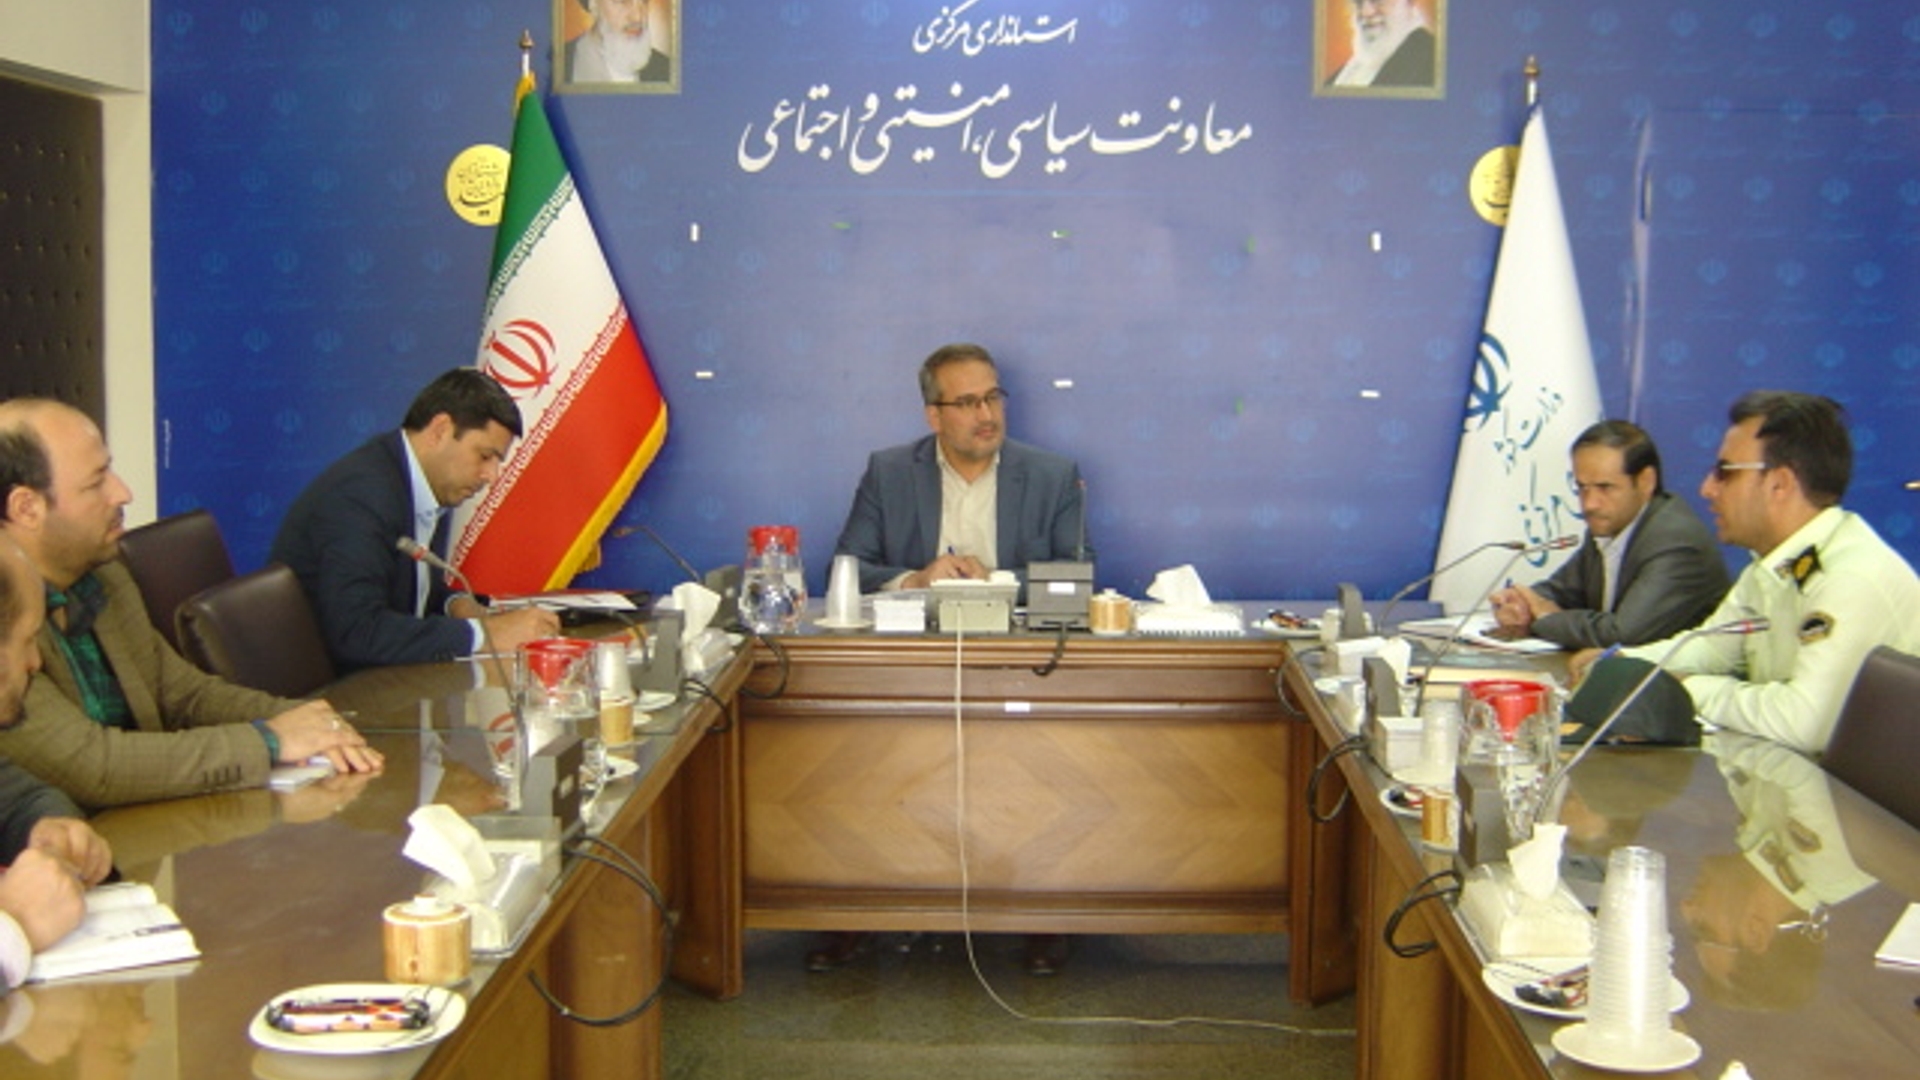 جلسه کمیته برآورده اطلاعات استان در ساعت 10-30 صبح روز دوشنبه مورخ 1401-7-18 به ریاست آقای رحیمی تبار مدیر کل امنیتی و انتظامی برگزار گردید.